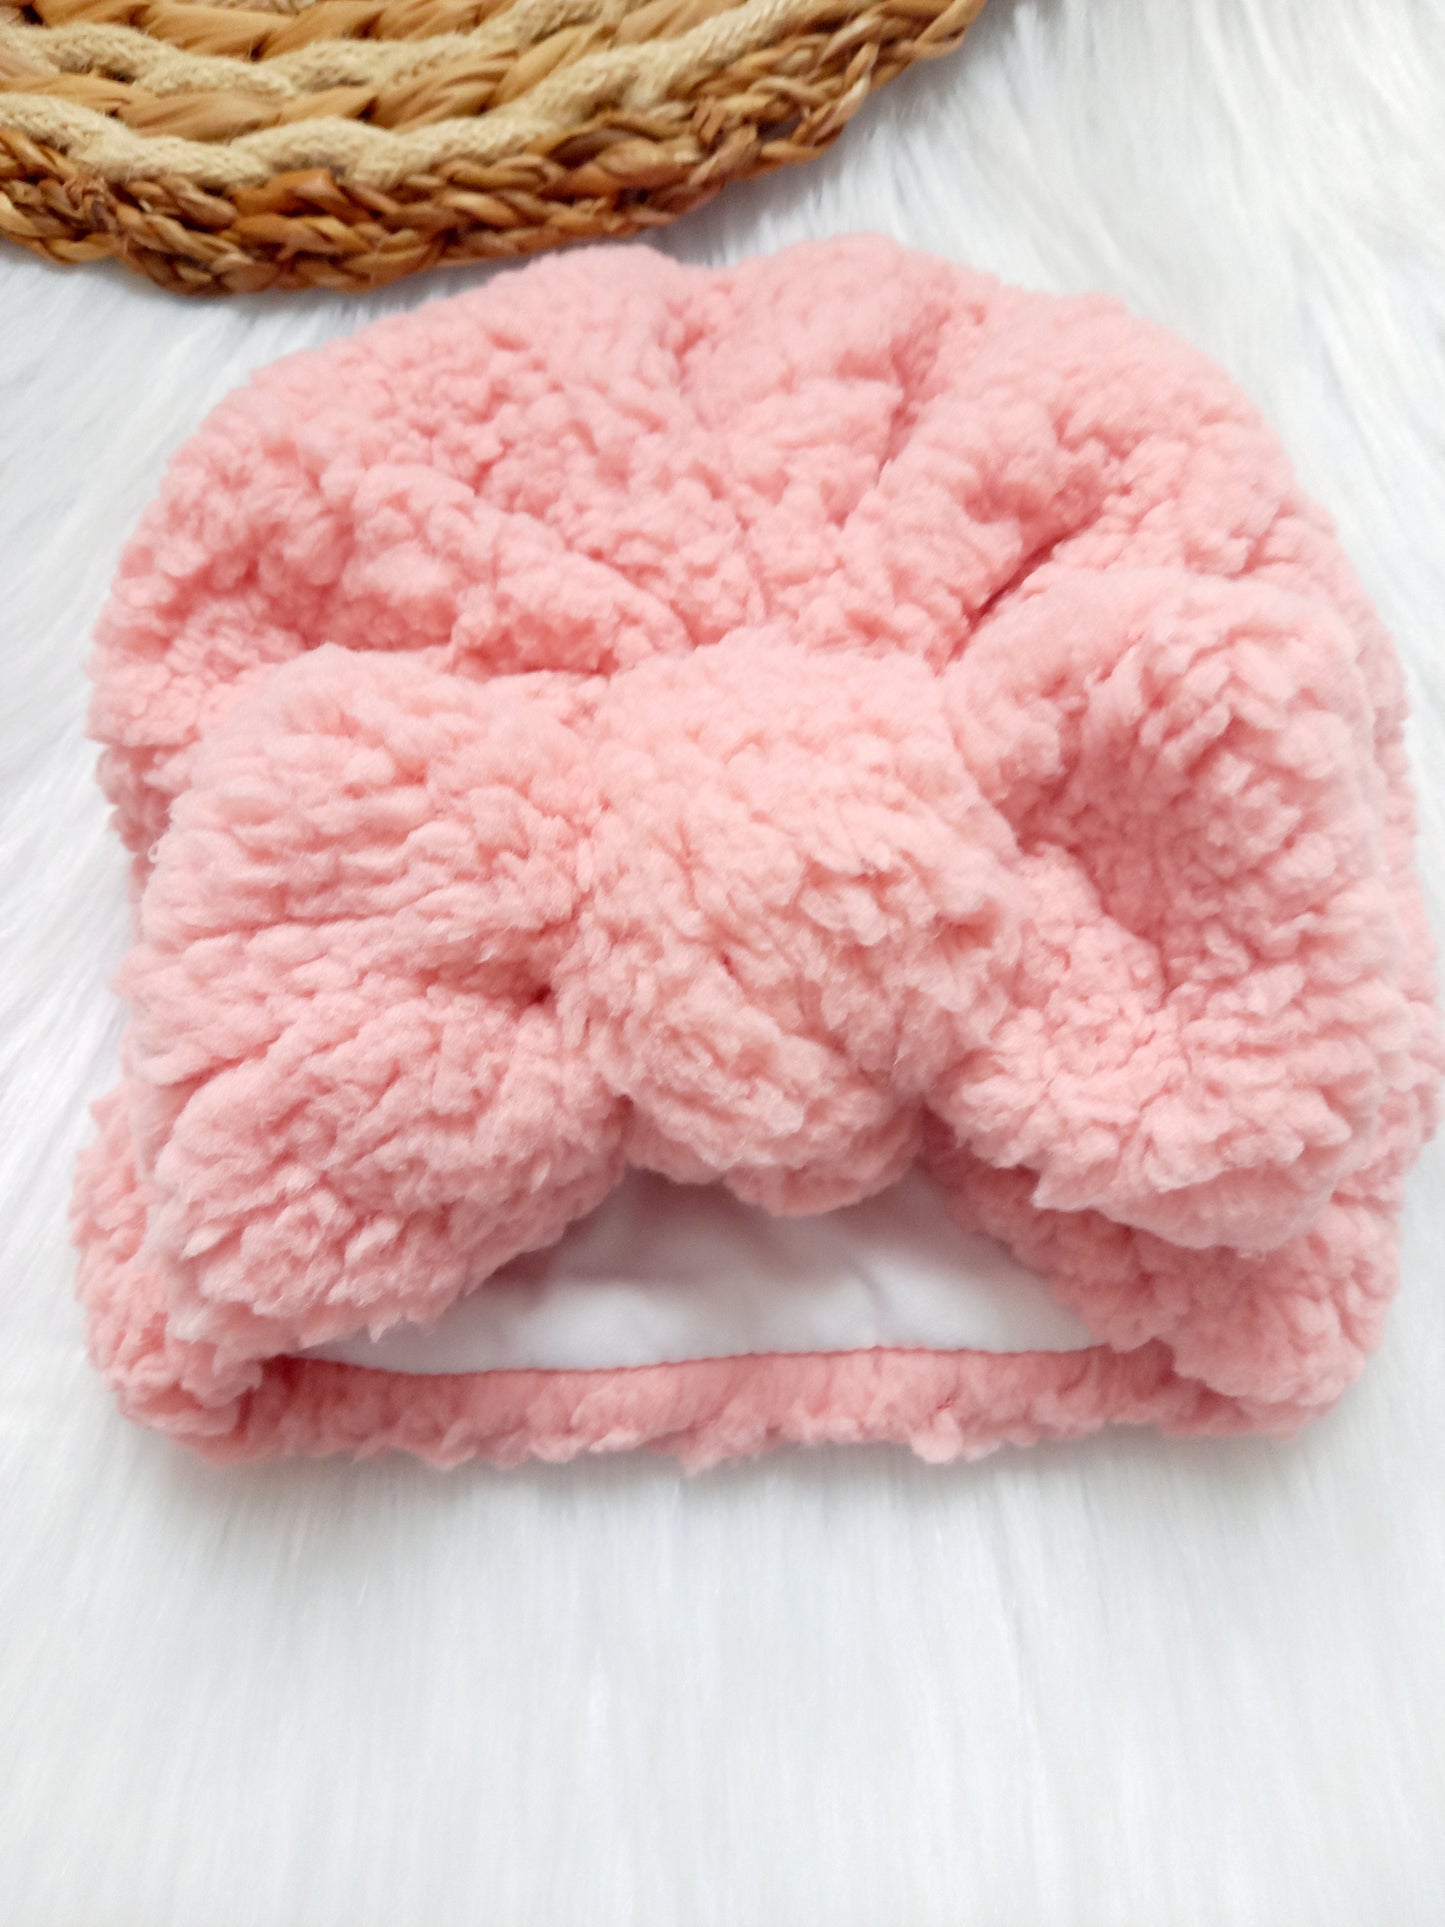 Turban teddy Lekker zachte teddy stof aan de buitenkant, de binnenkant is wit katoen. Zacht en warm en ziet er nog eens super leuk uit! turban baby muts roze